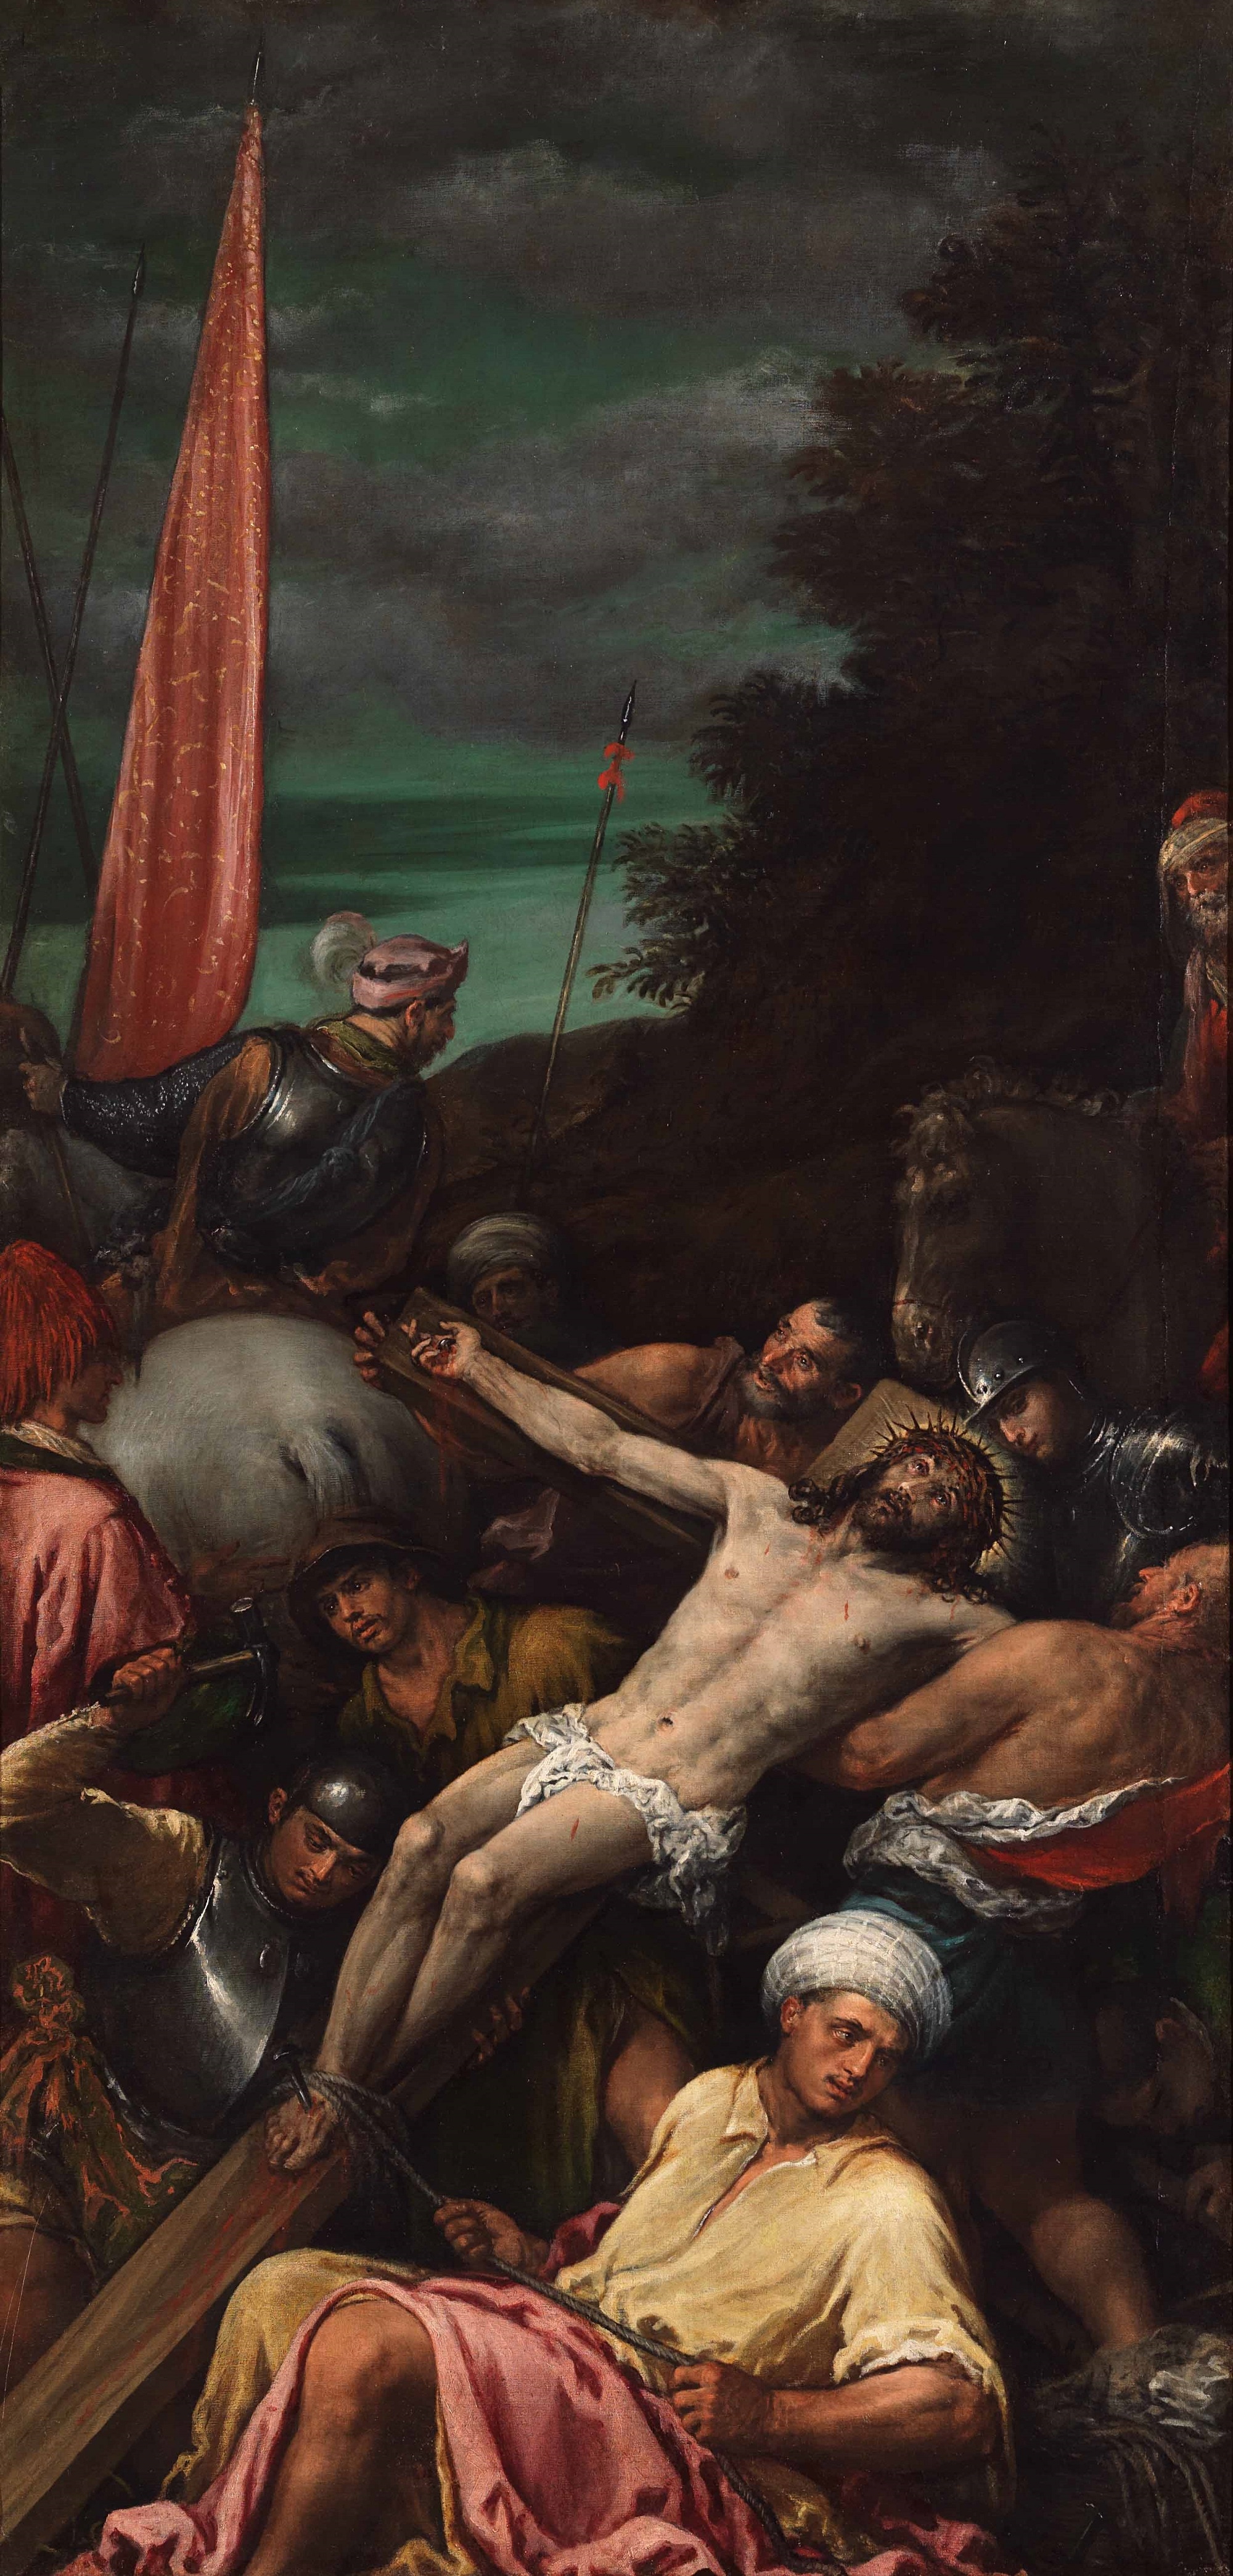 Gerolamo Bassano, Cristo innalzato sulla croce, 1580–1590 c., olio su tela, Museo Civico, Bassano del Grappa